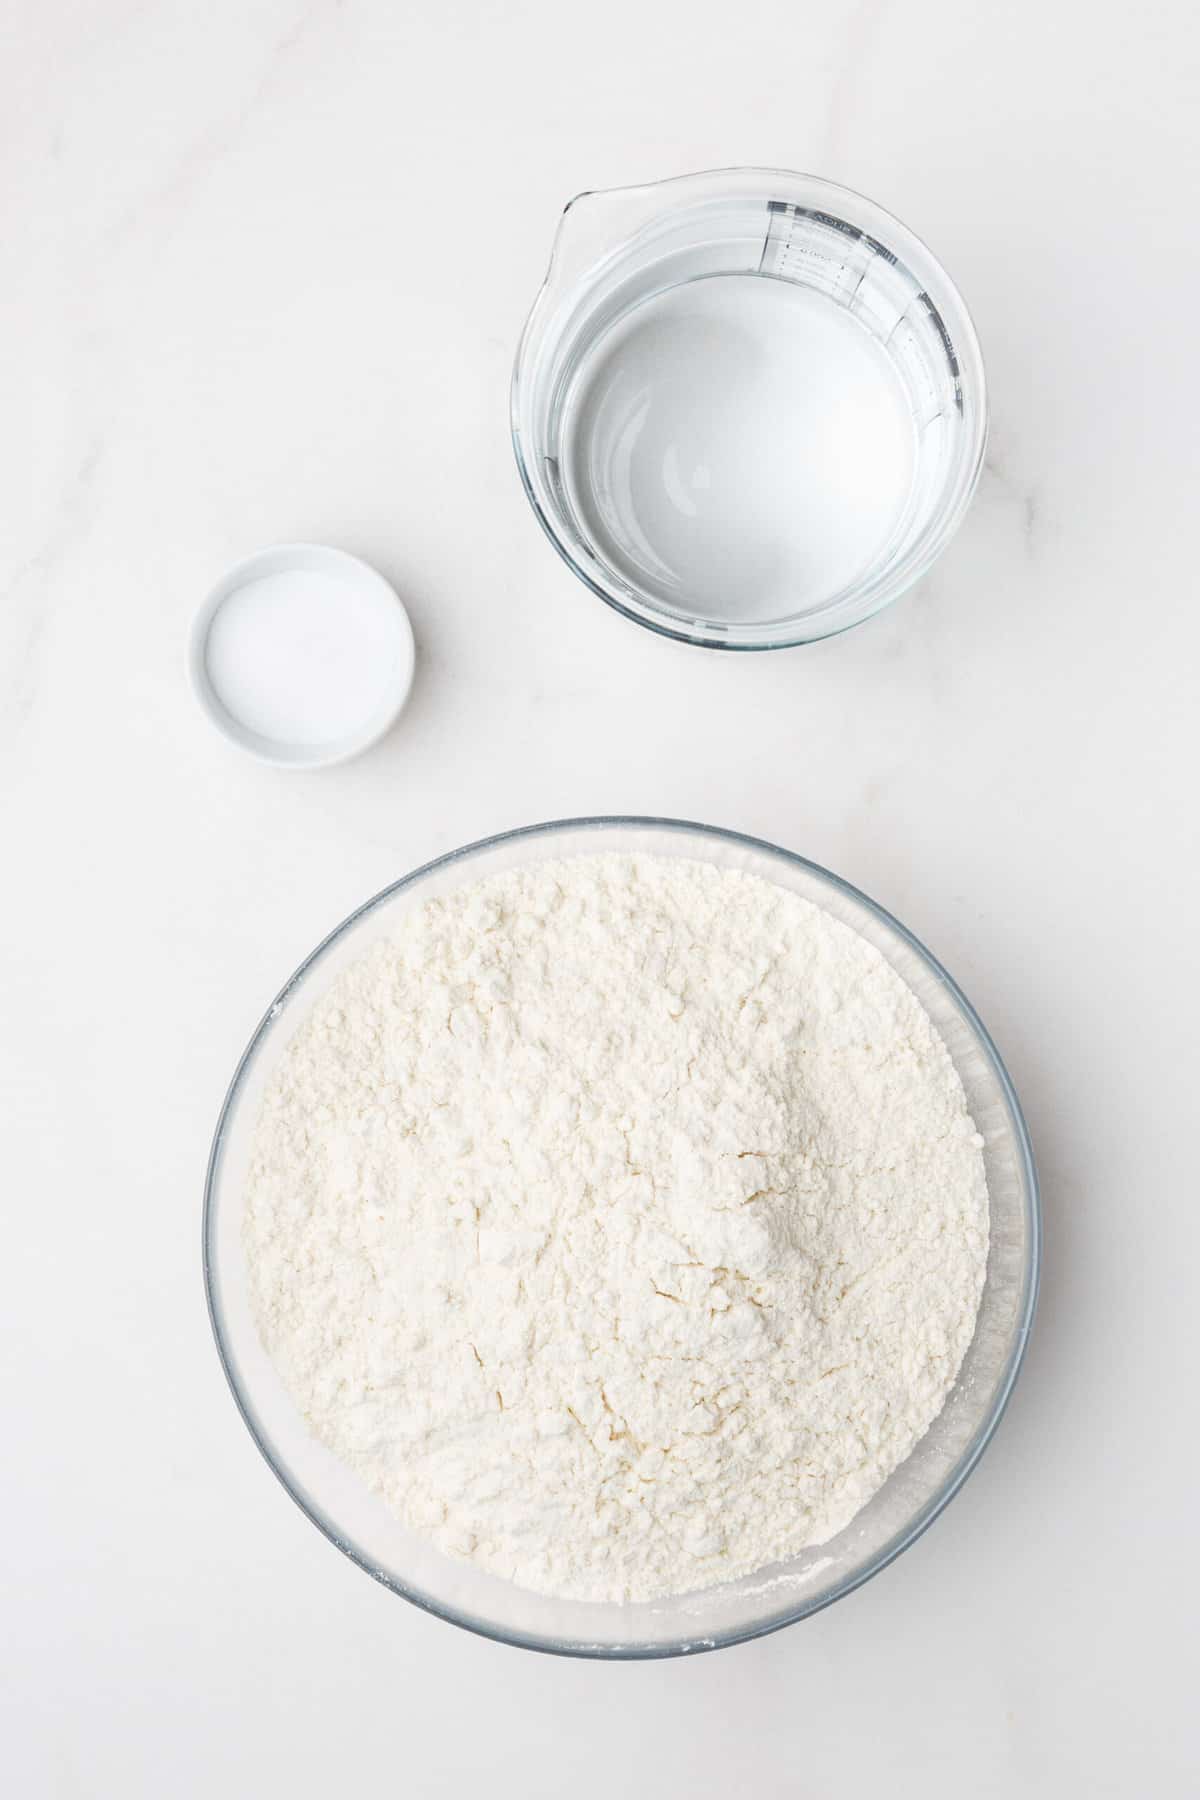 ingredients to make sourdough dough